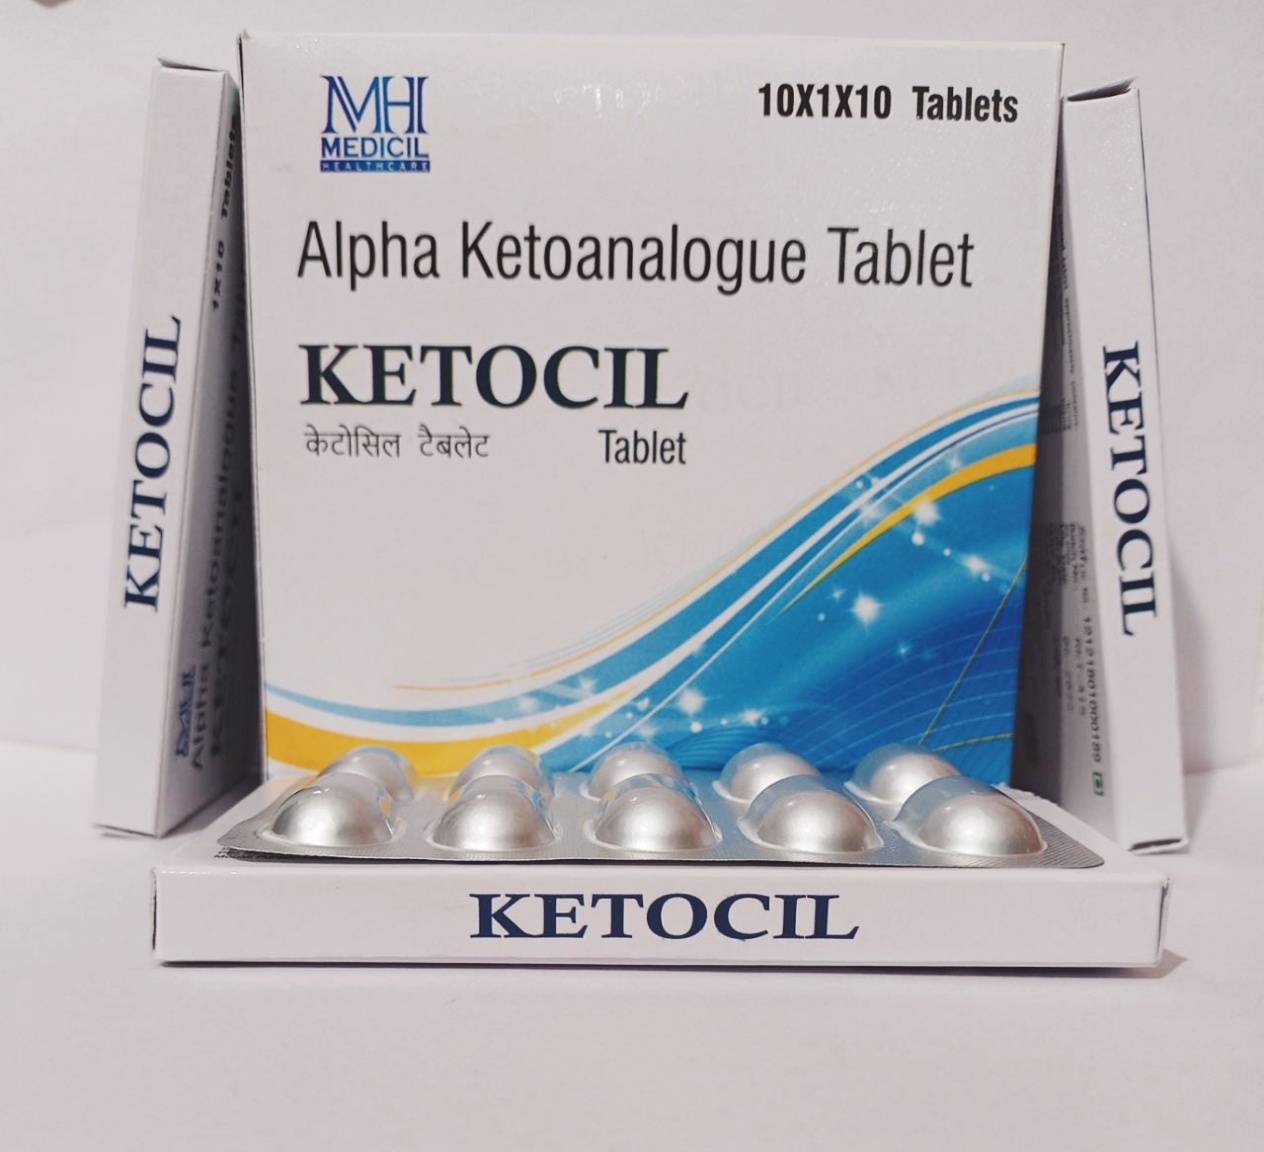 KETOCIL Tablets